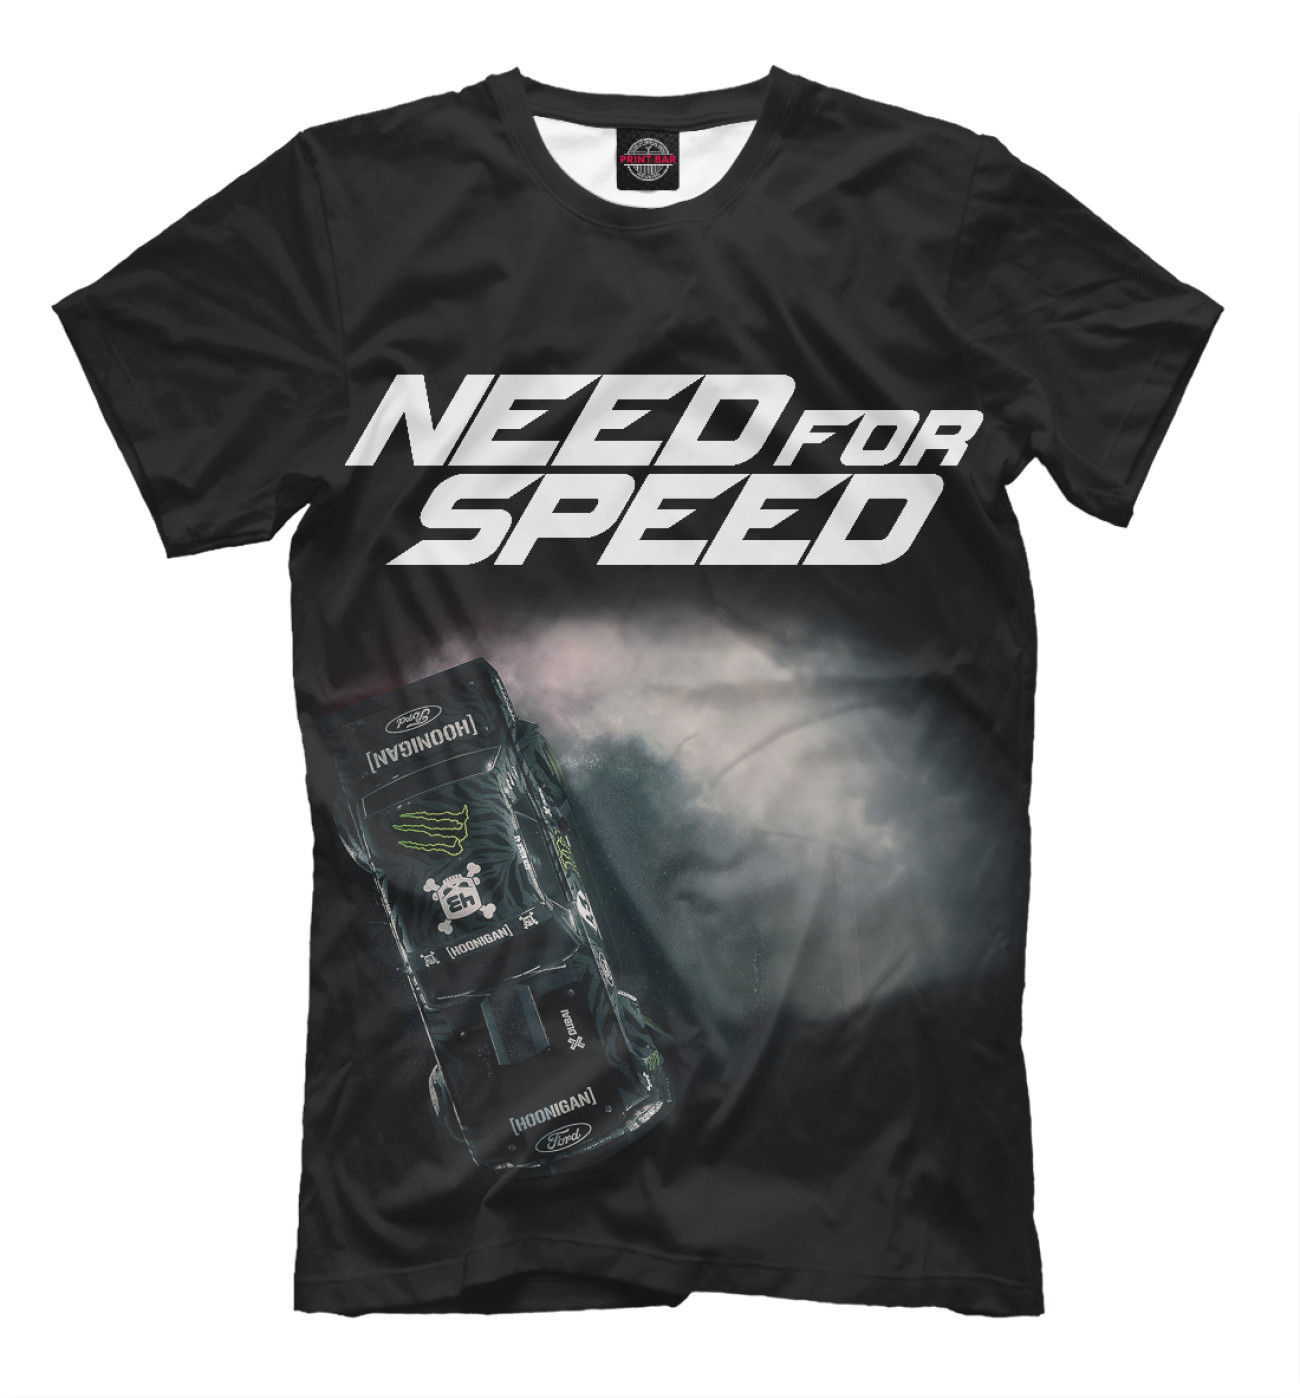 Мужская Футболка Need For Speed, артикул: APD-311660-fut-2